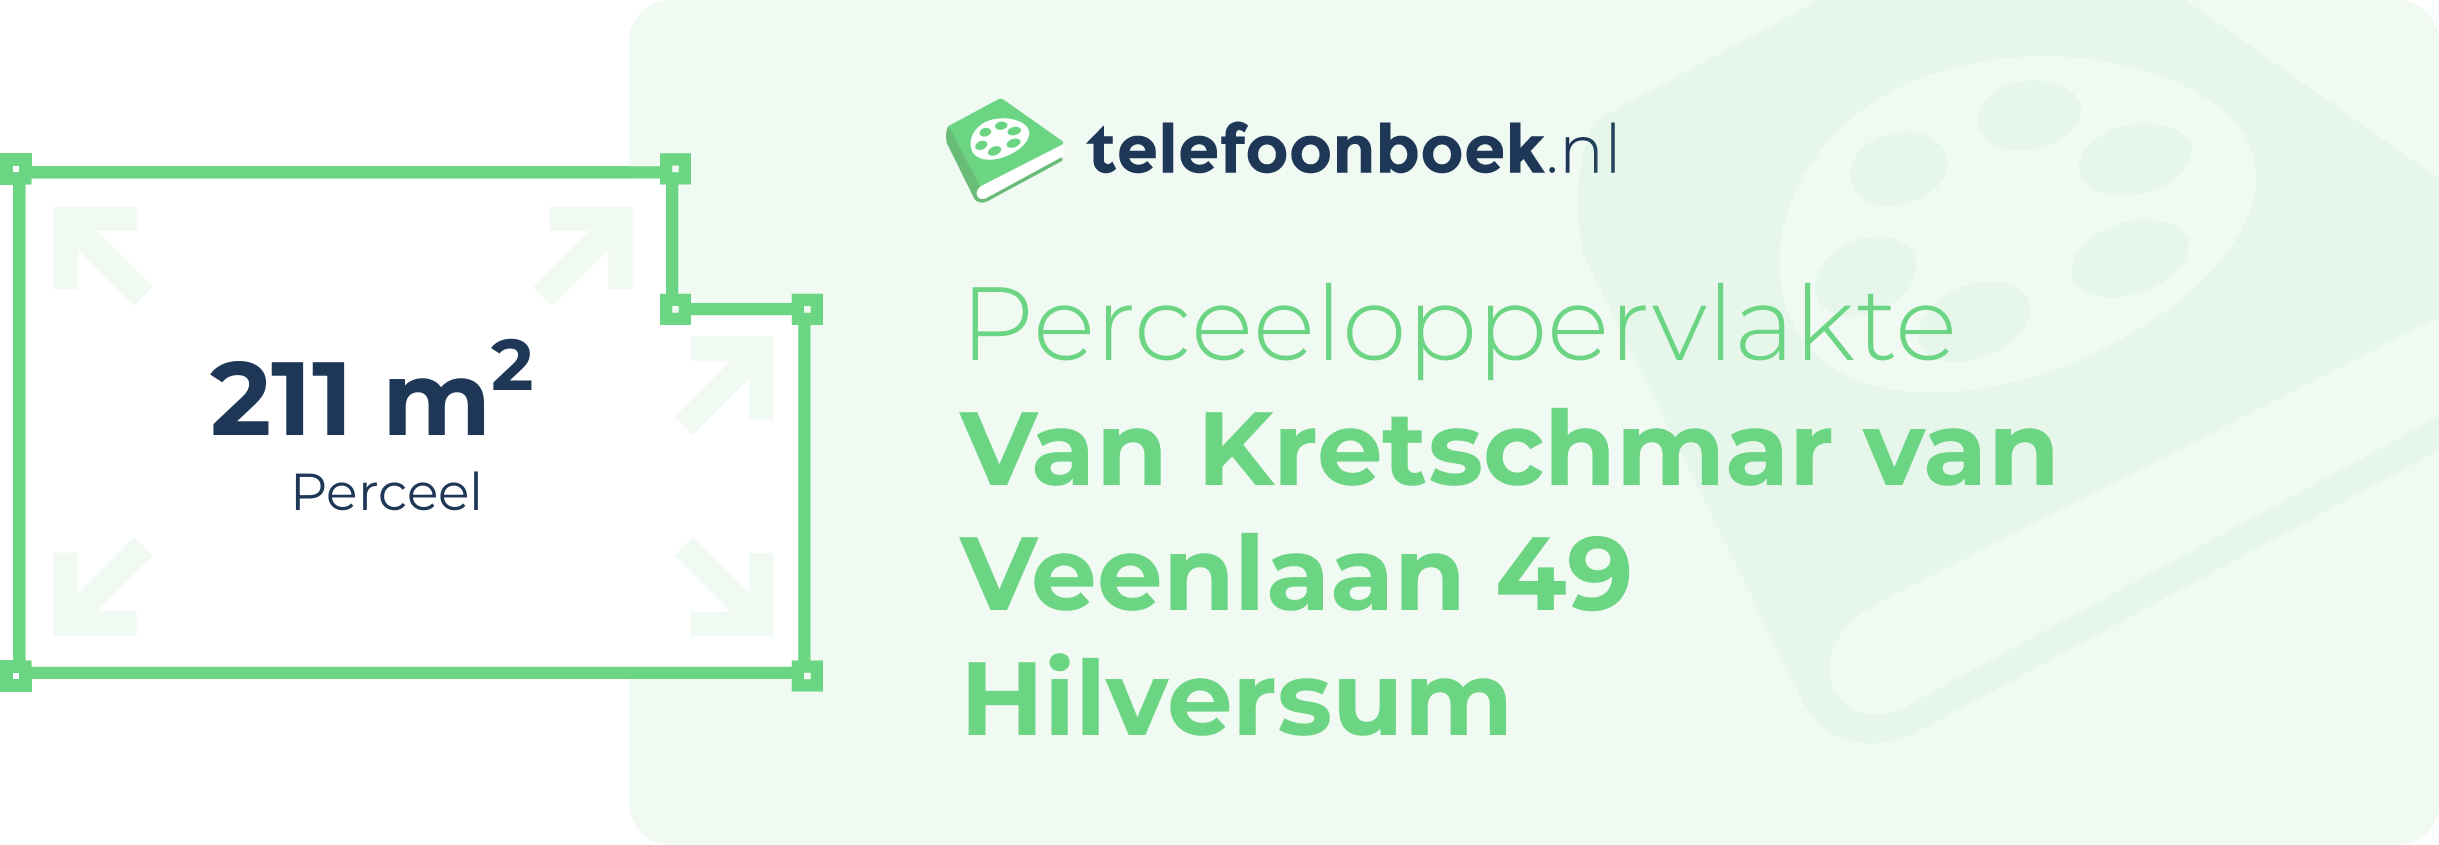 Perceeloppervlakte Van Kretschmar Van Veenlaan 49 Hilversum